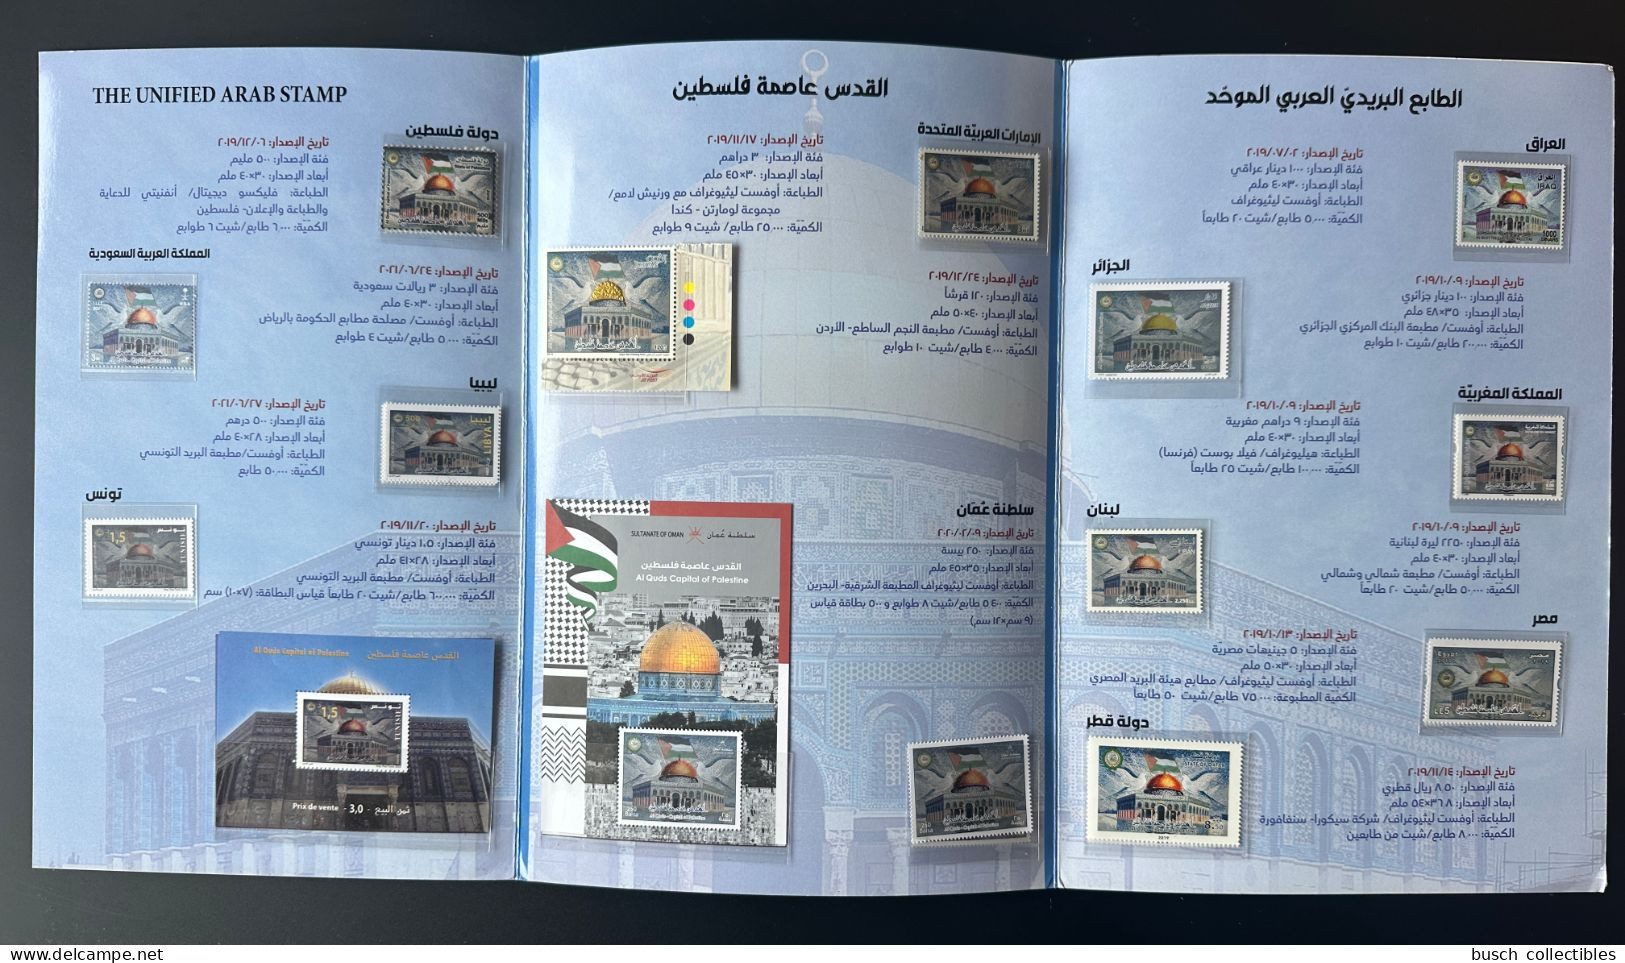 2019 Joint Issue Emission Commune Al Qods Quds Capitale De La Palestine Encart Folder 13 Pays Countries With Oman RARE! - Emisiones Comunes